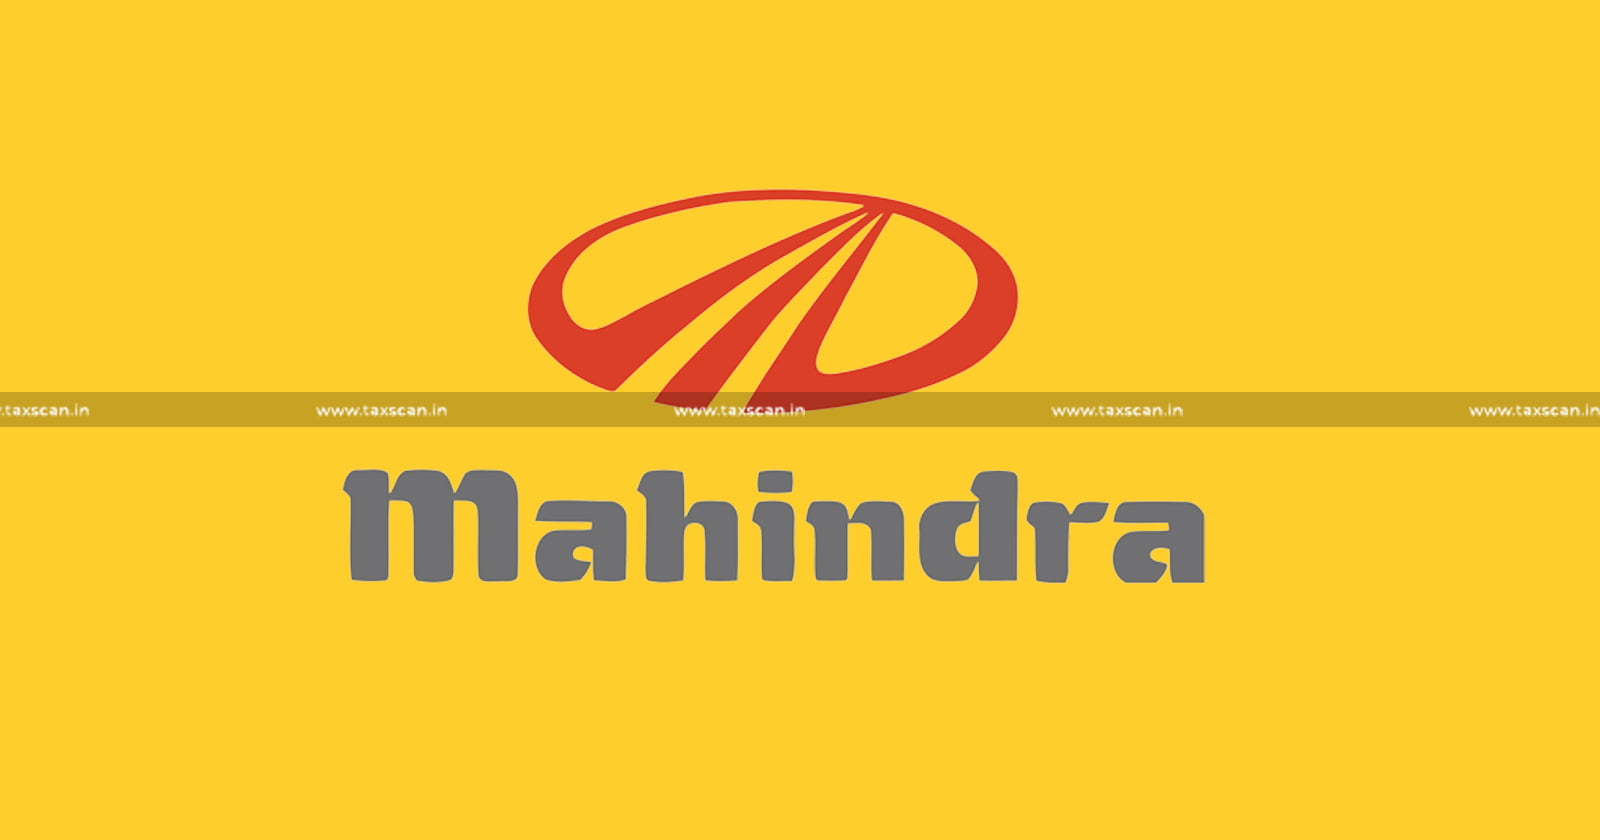 CA - MBA - Mahindra - MBA Vacancy in Mahindra - CA Vacancy in Mahindra - taxscan